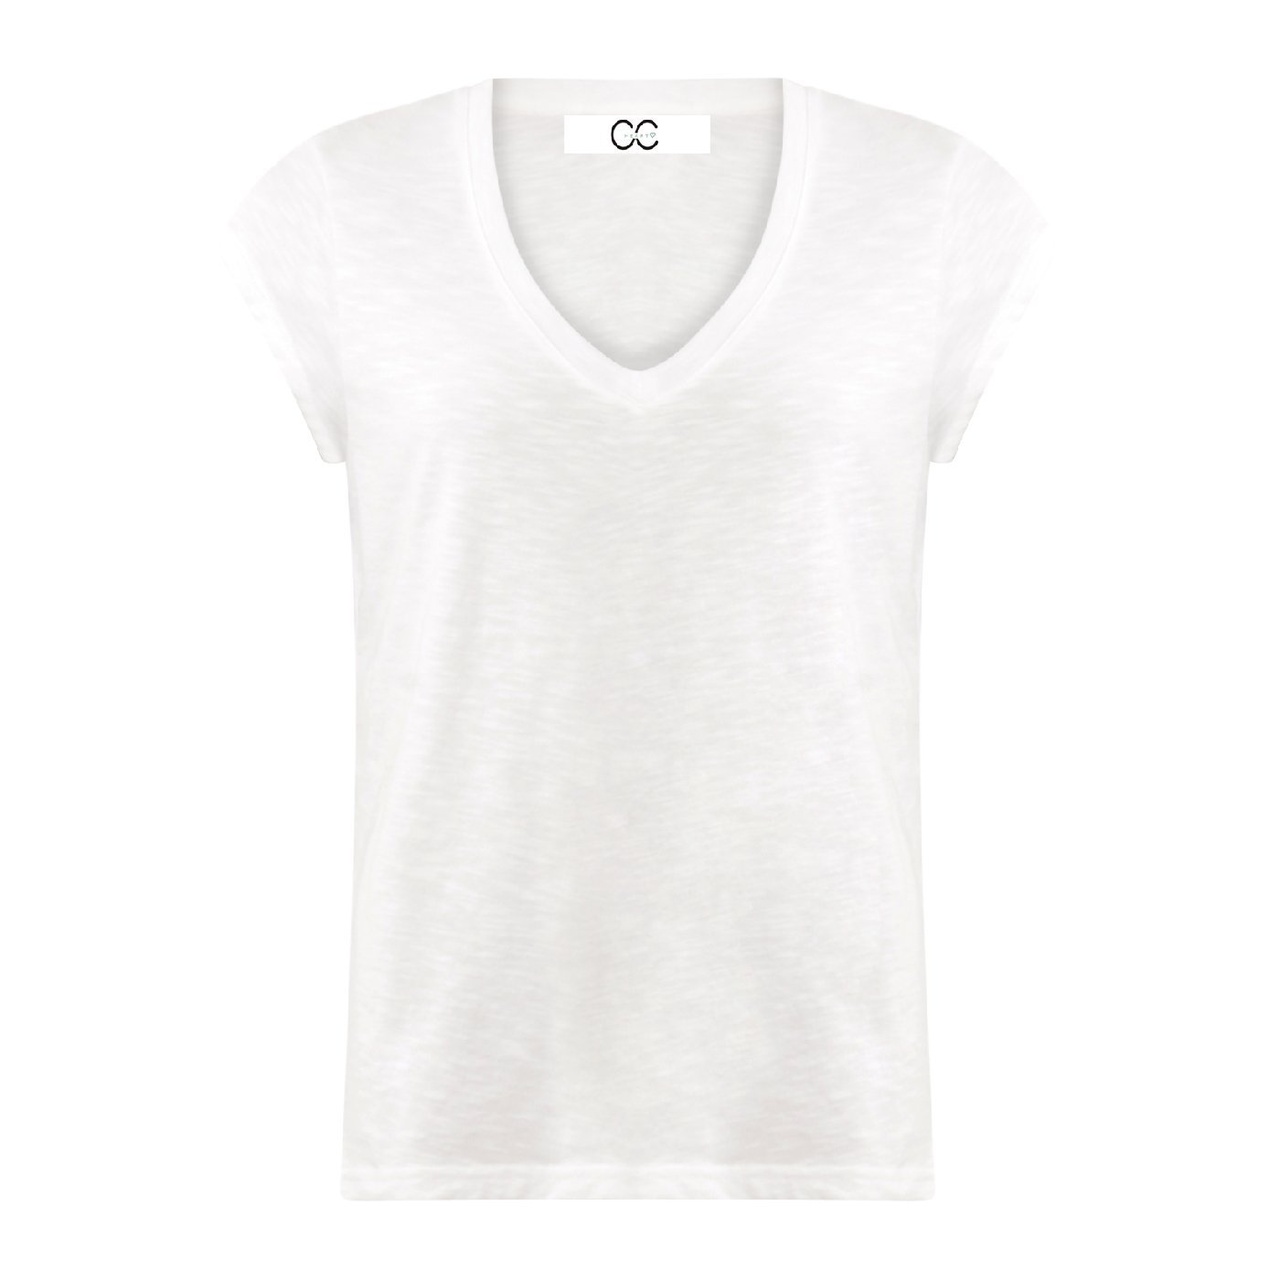 CC Heart V-neck T-shirt S White